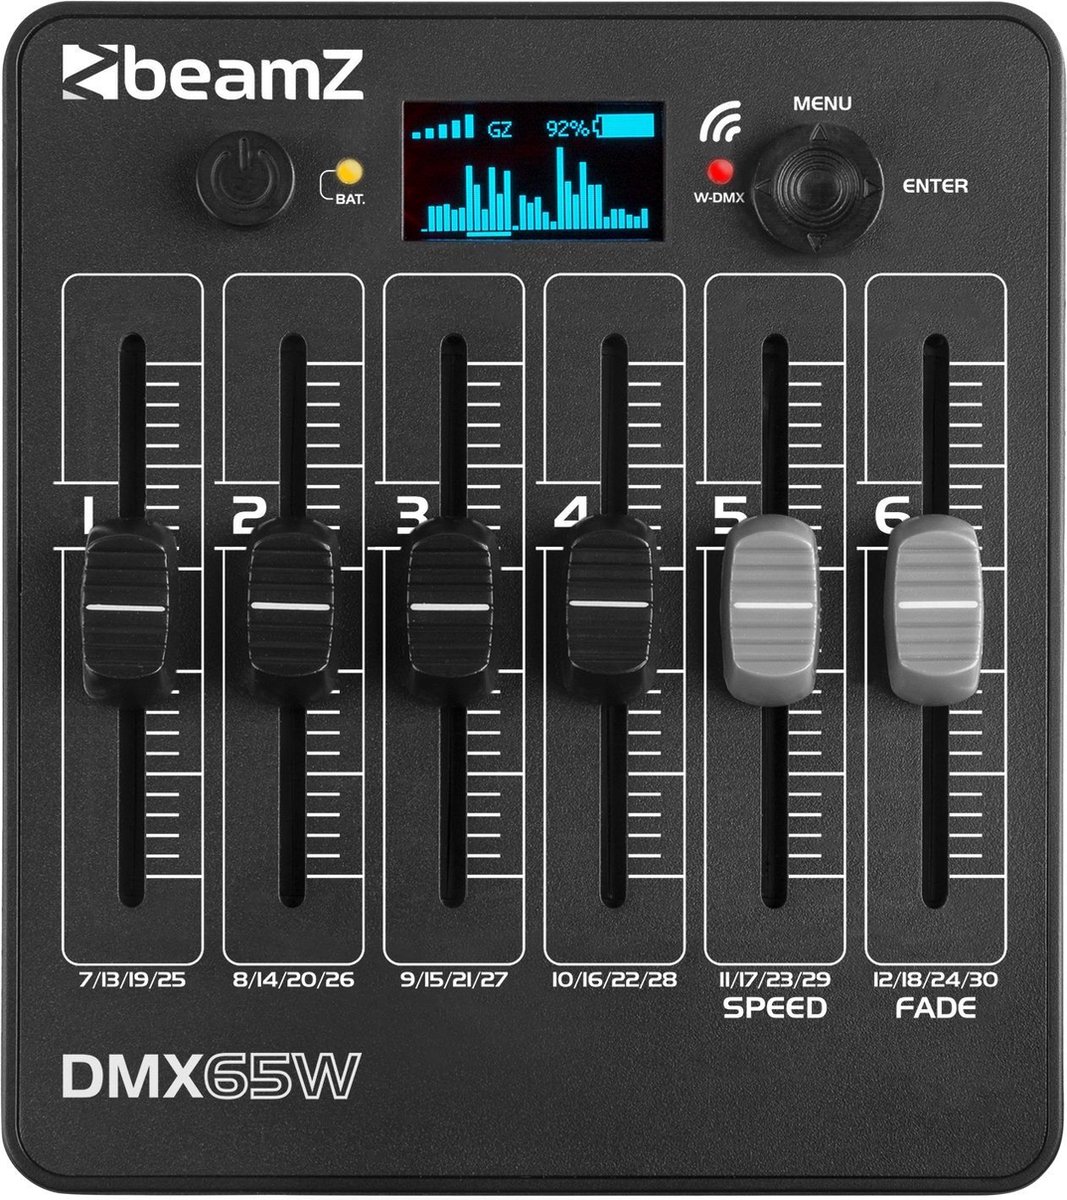 BeamZ DMX65W Contrôleur DMX sans fil 30 canaux sur batterie